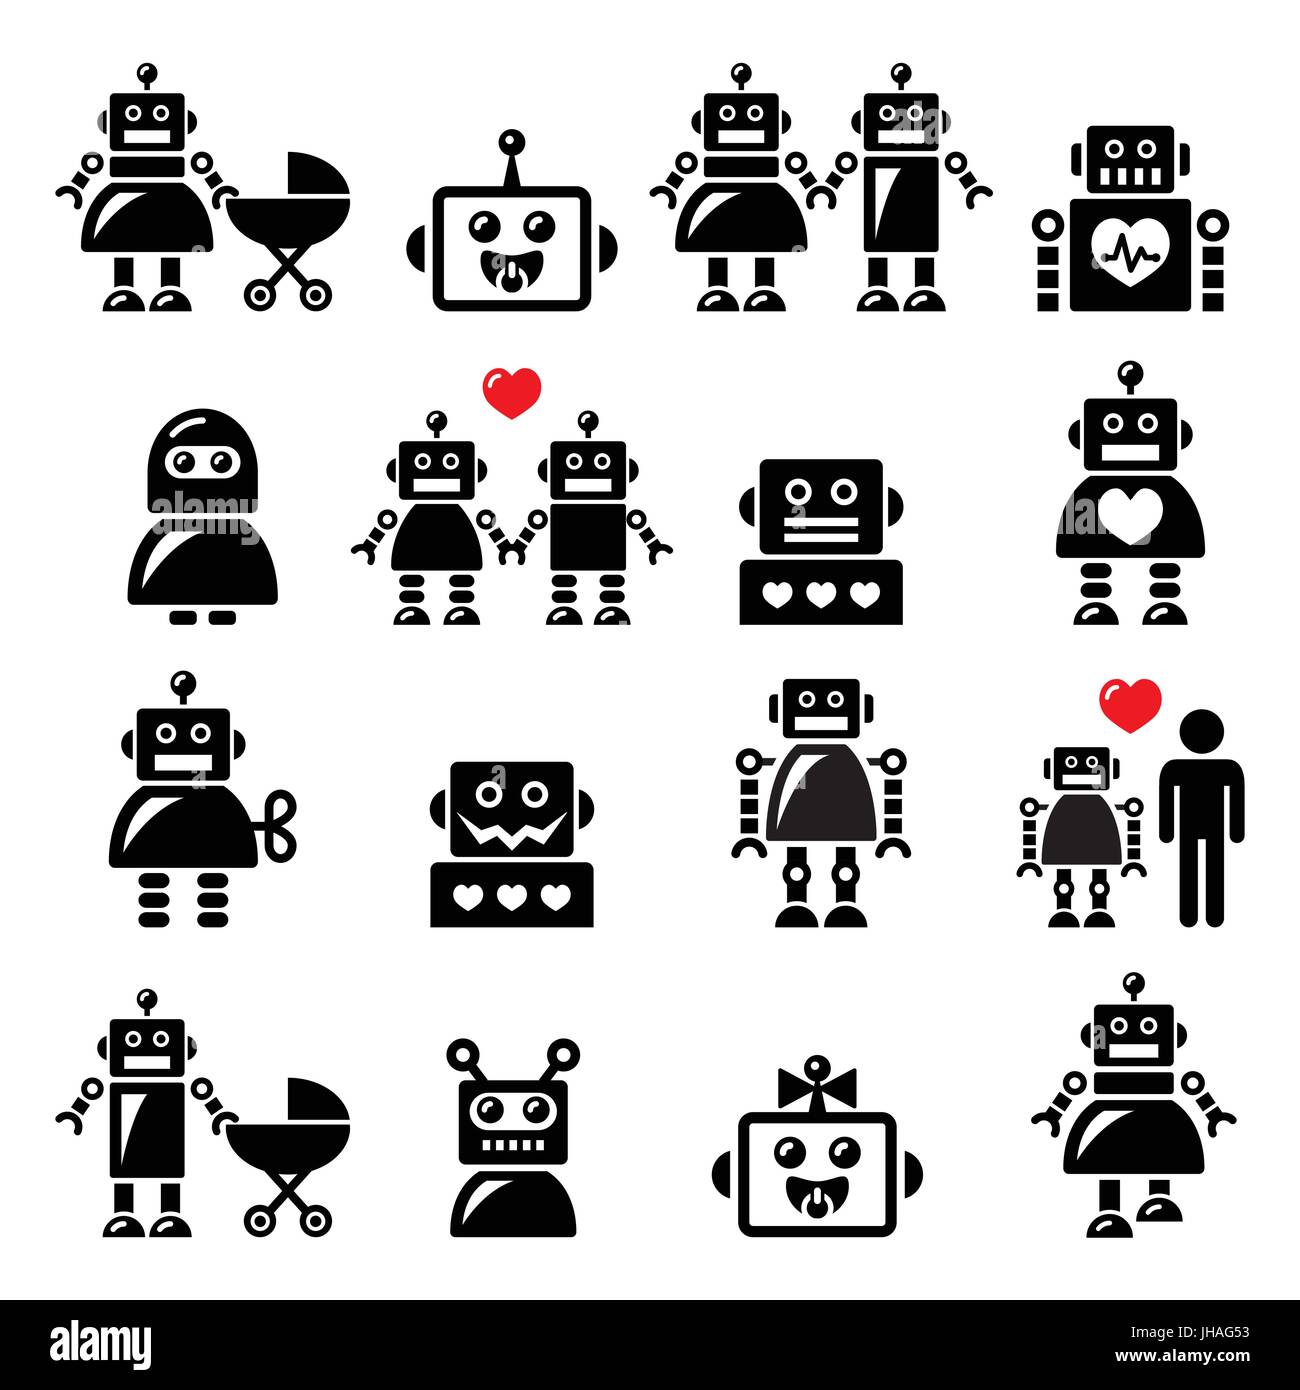 Famille, femme, robot robot bébé icons set Vector icons set de robot, la technologie moderne, l'Intelligence Artificielle (IA) isolated on white Illustration de Vecteur